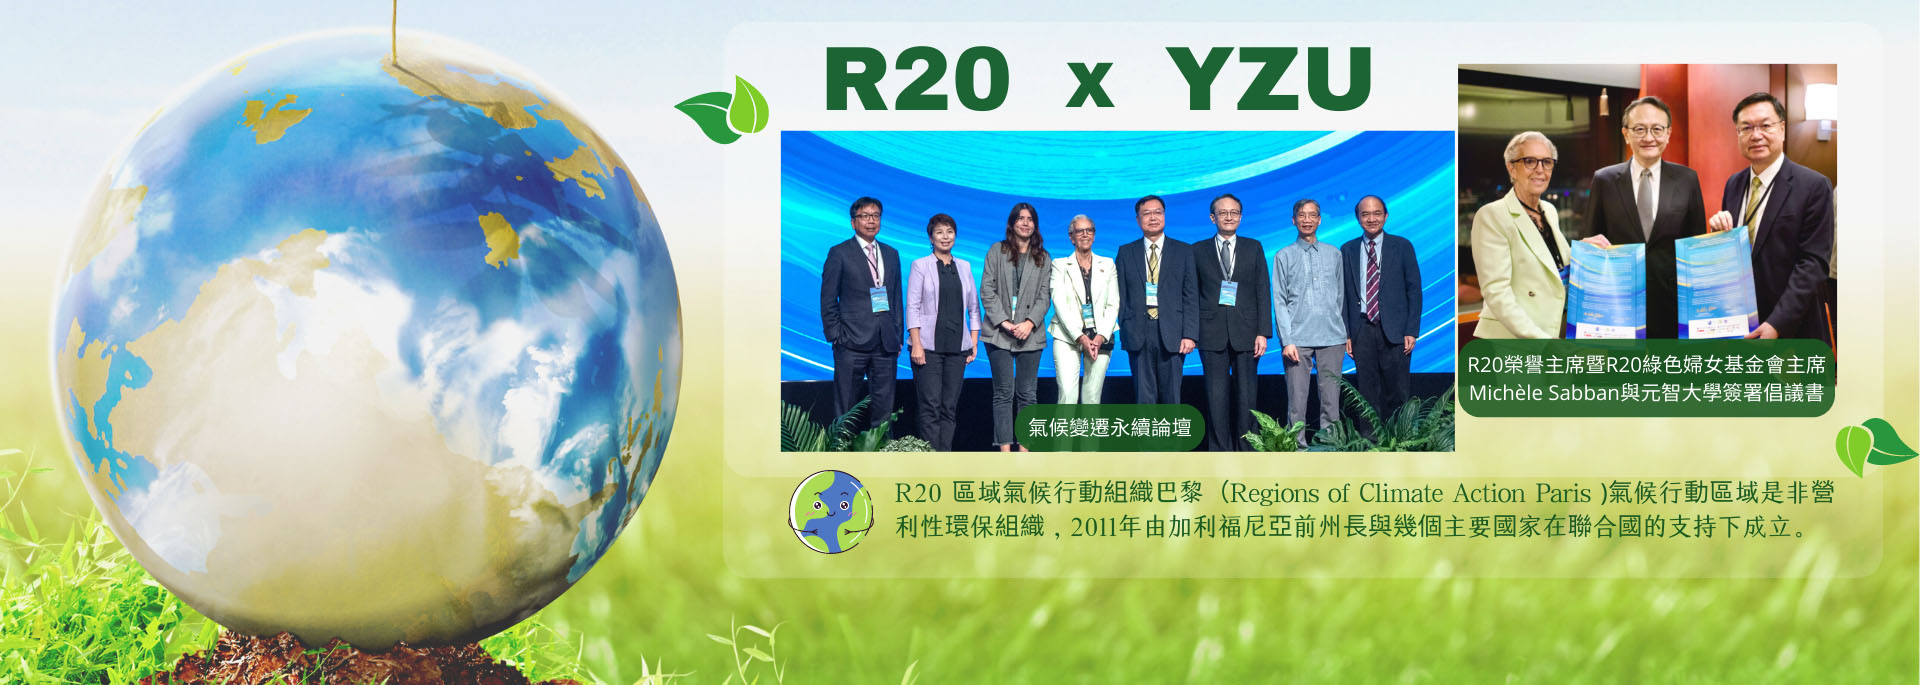 元智大學與R20攜手舉辦氣候變遷永續論壇 |助企業淨零接軌國際